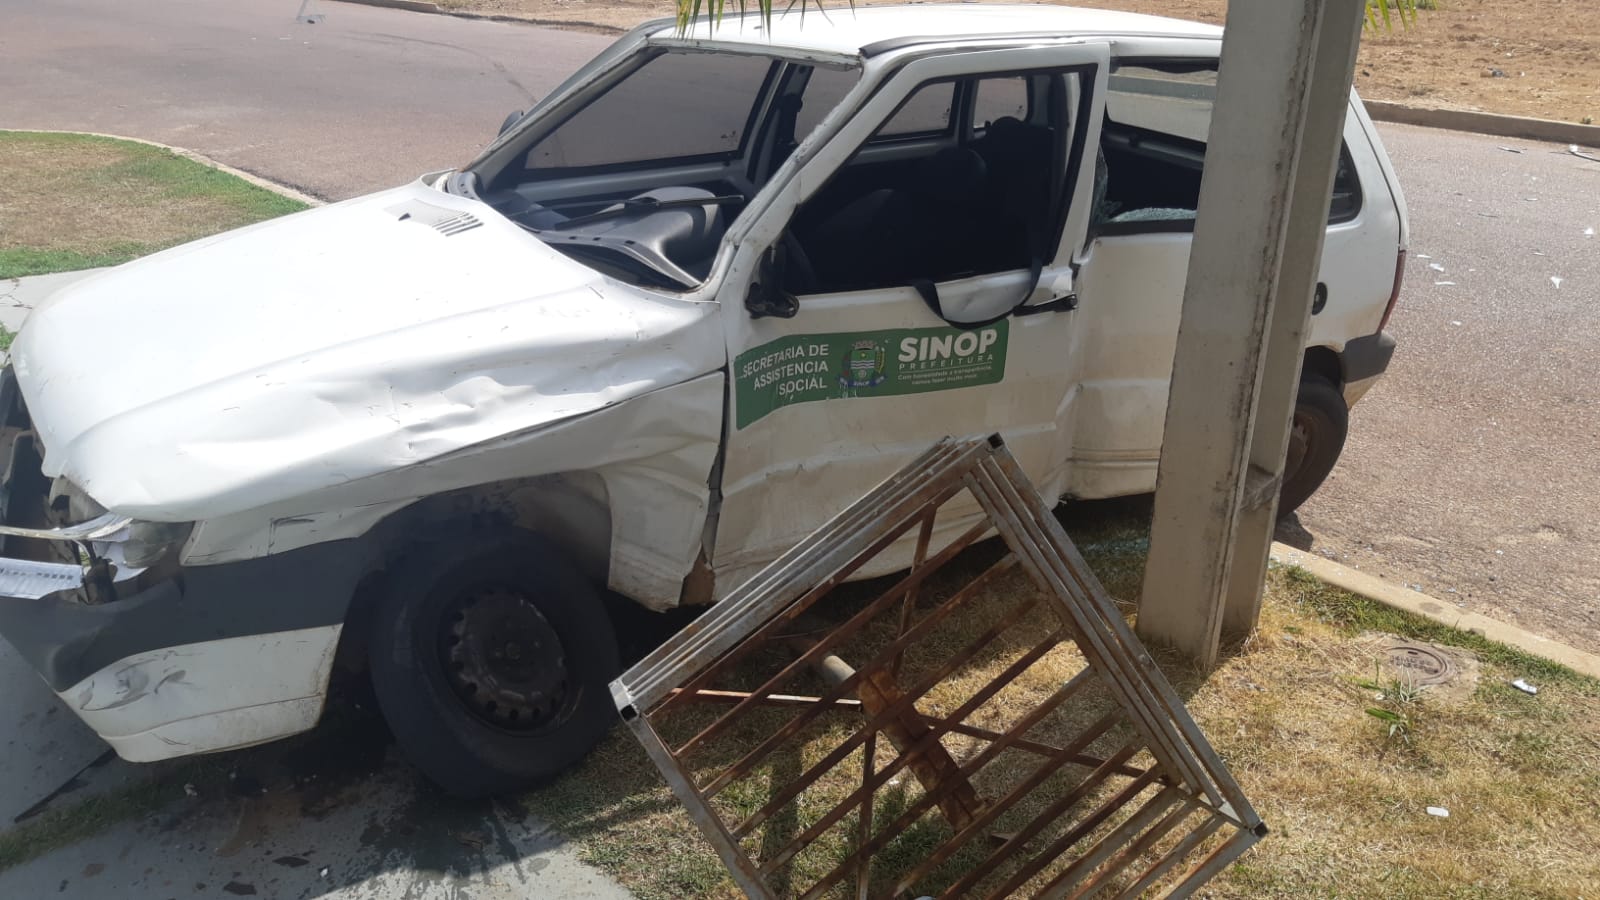 SINOP: Carro da Prefeitura se envolve em acidente e servidora será operada 2